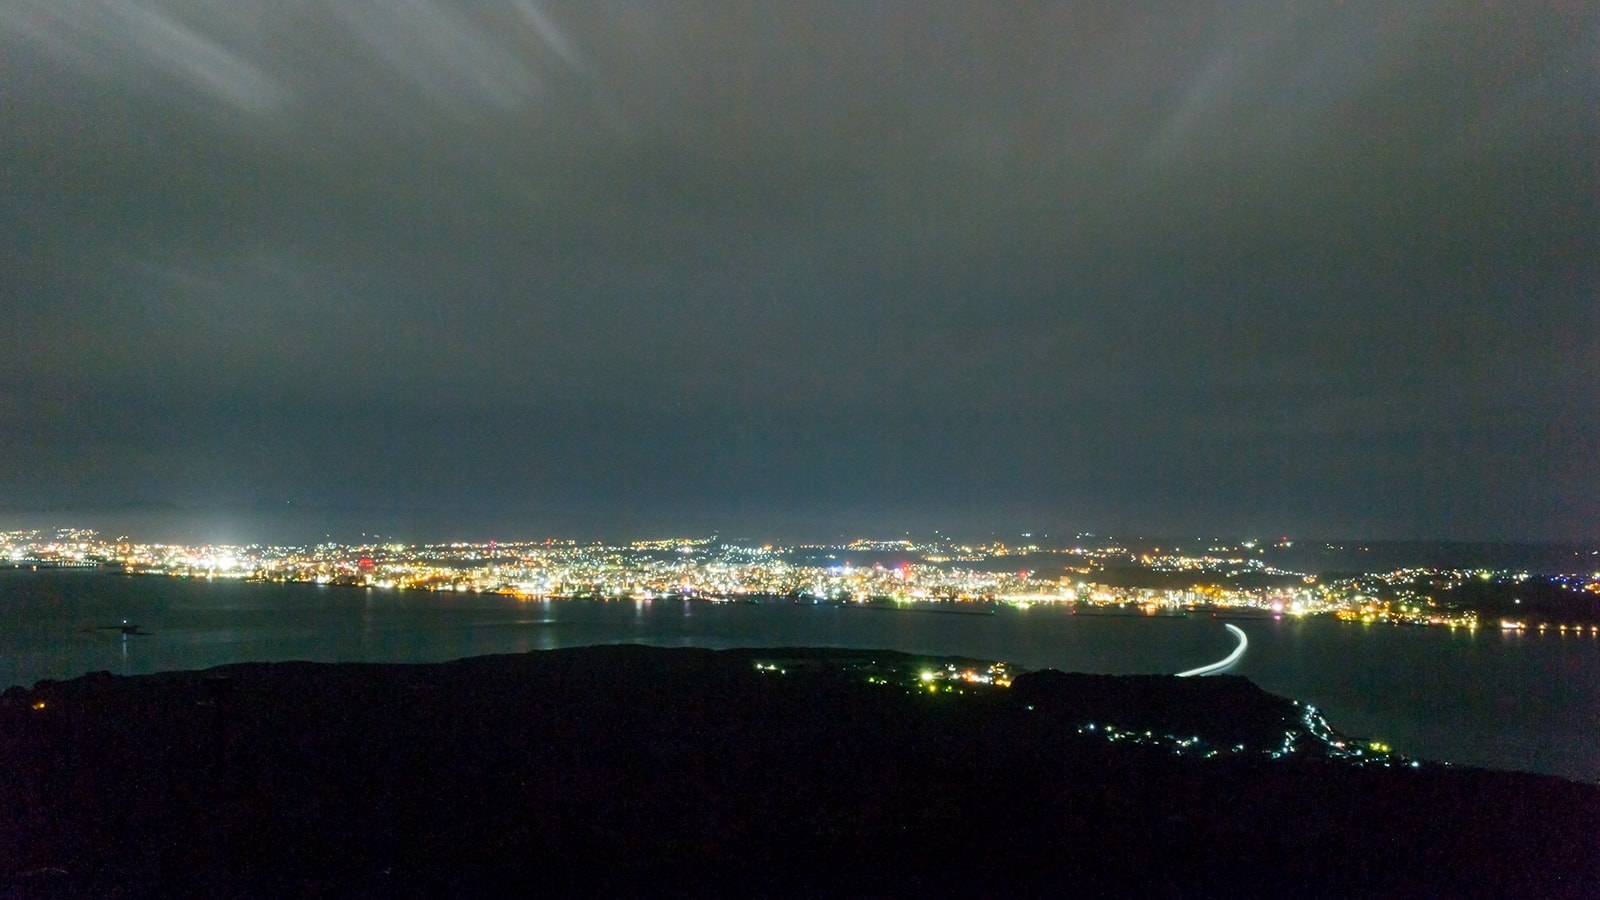 湯之平展望所から見た鹿児島湾と鹿児島市の夜景（海に掛かる光はフェリーの軌跡） - - 鹿児島県の観光、撮影スポット- -